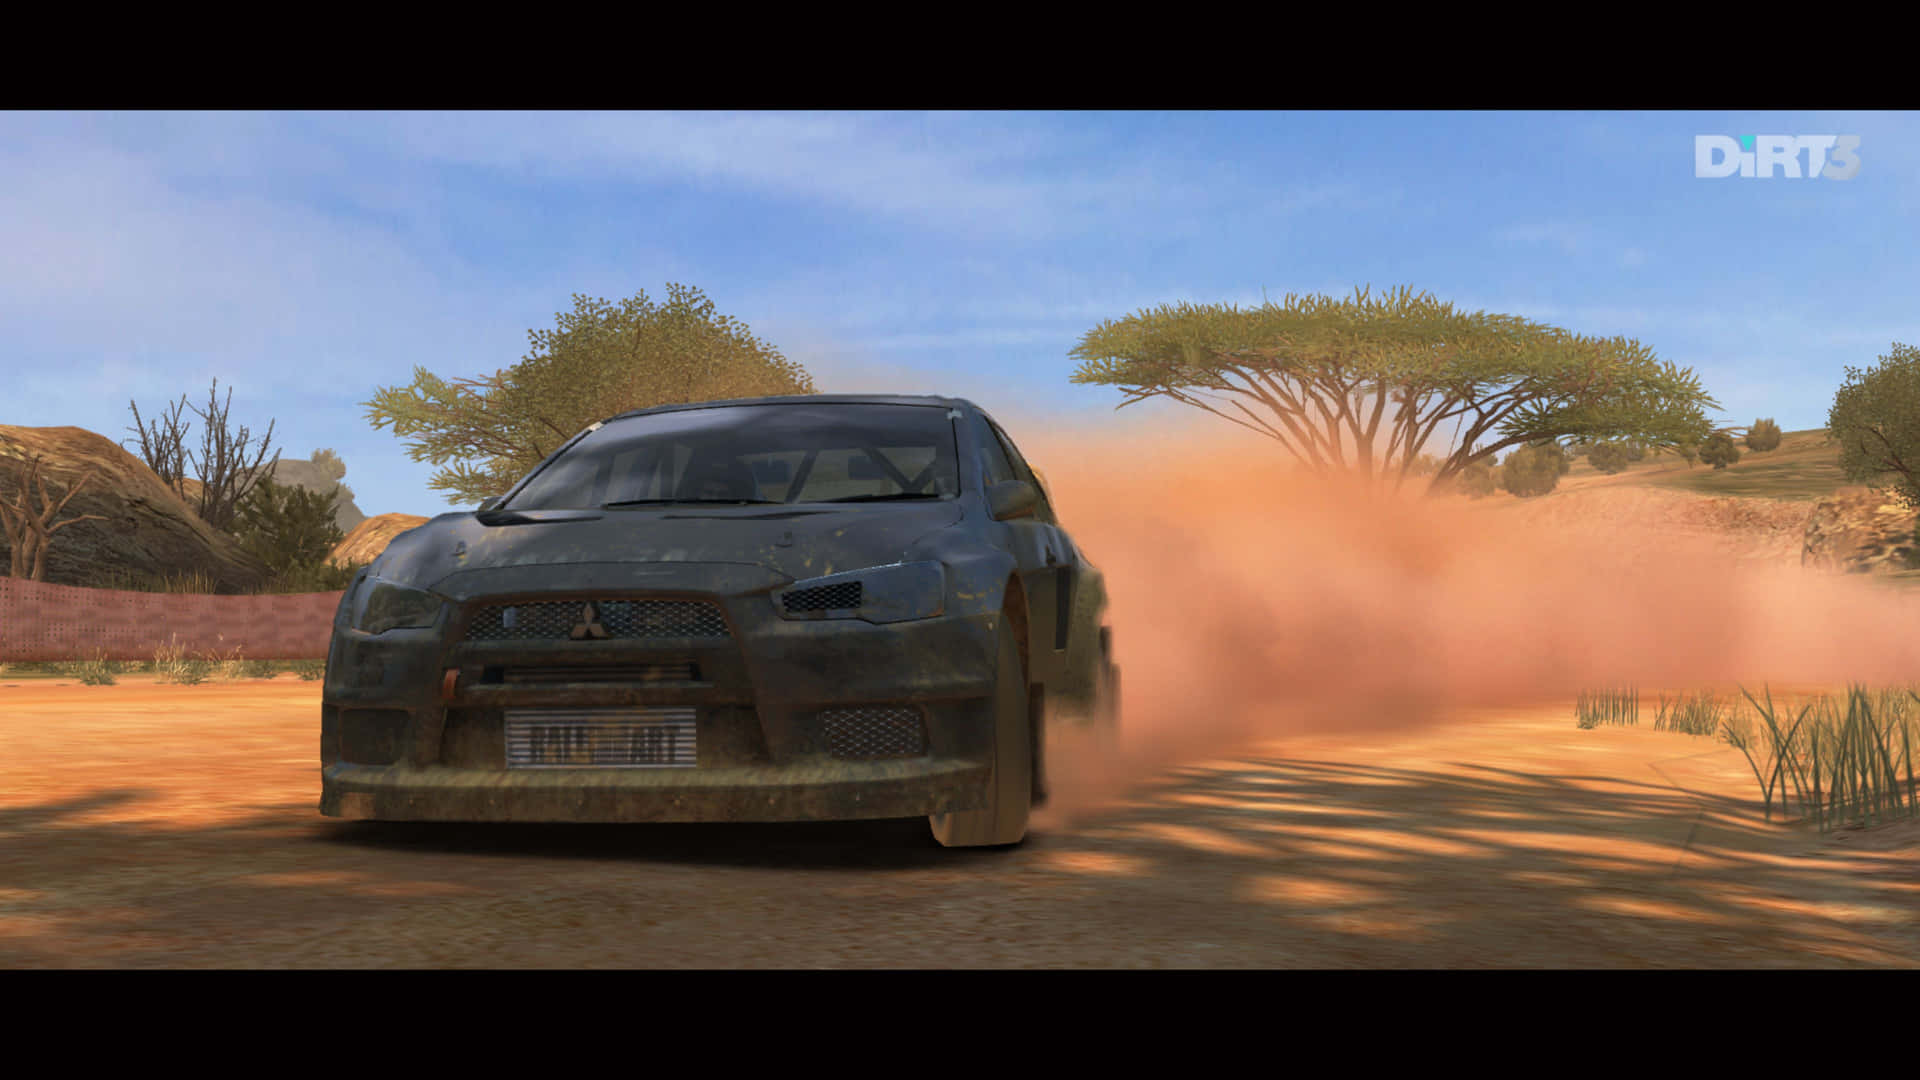 A Car Driving Through A Dirt Road